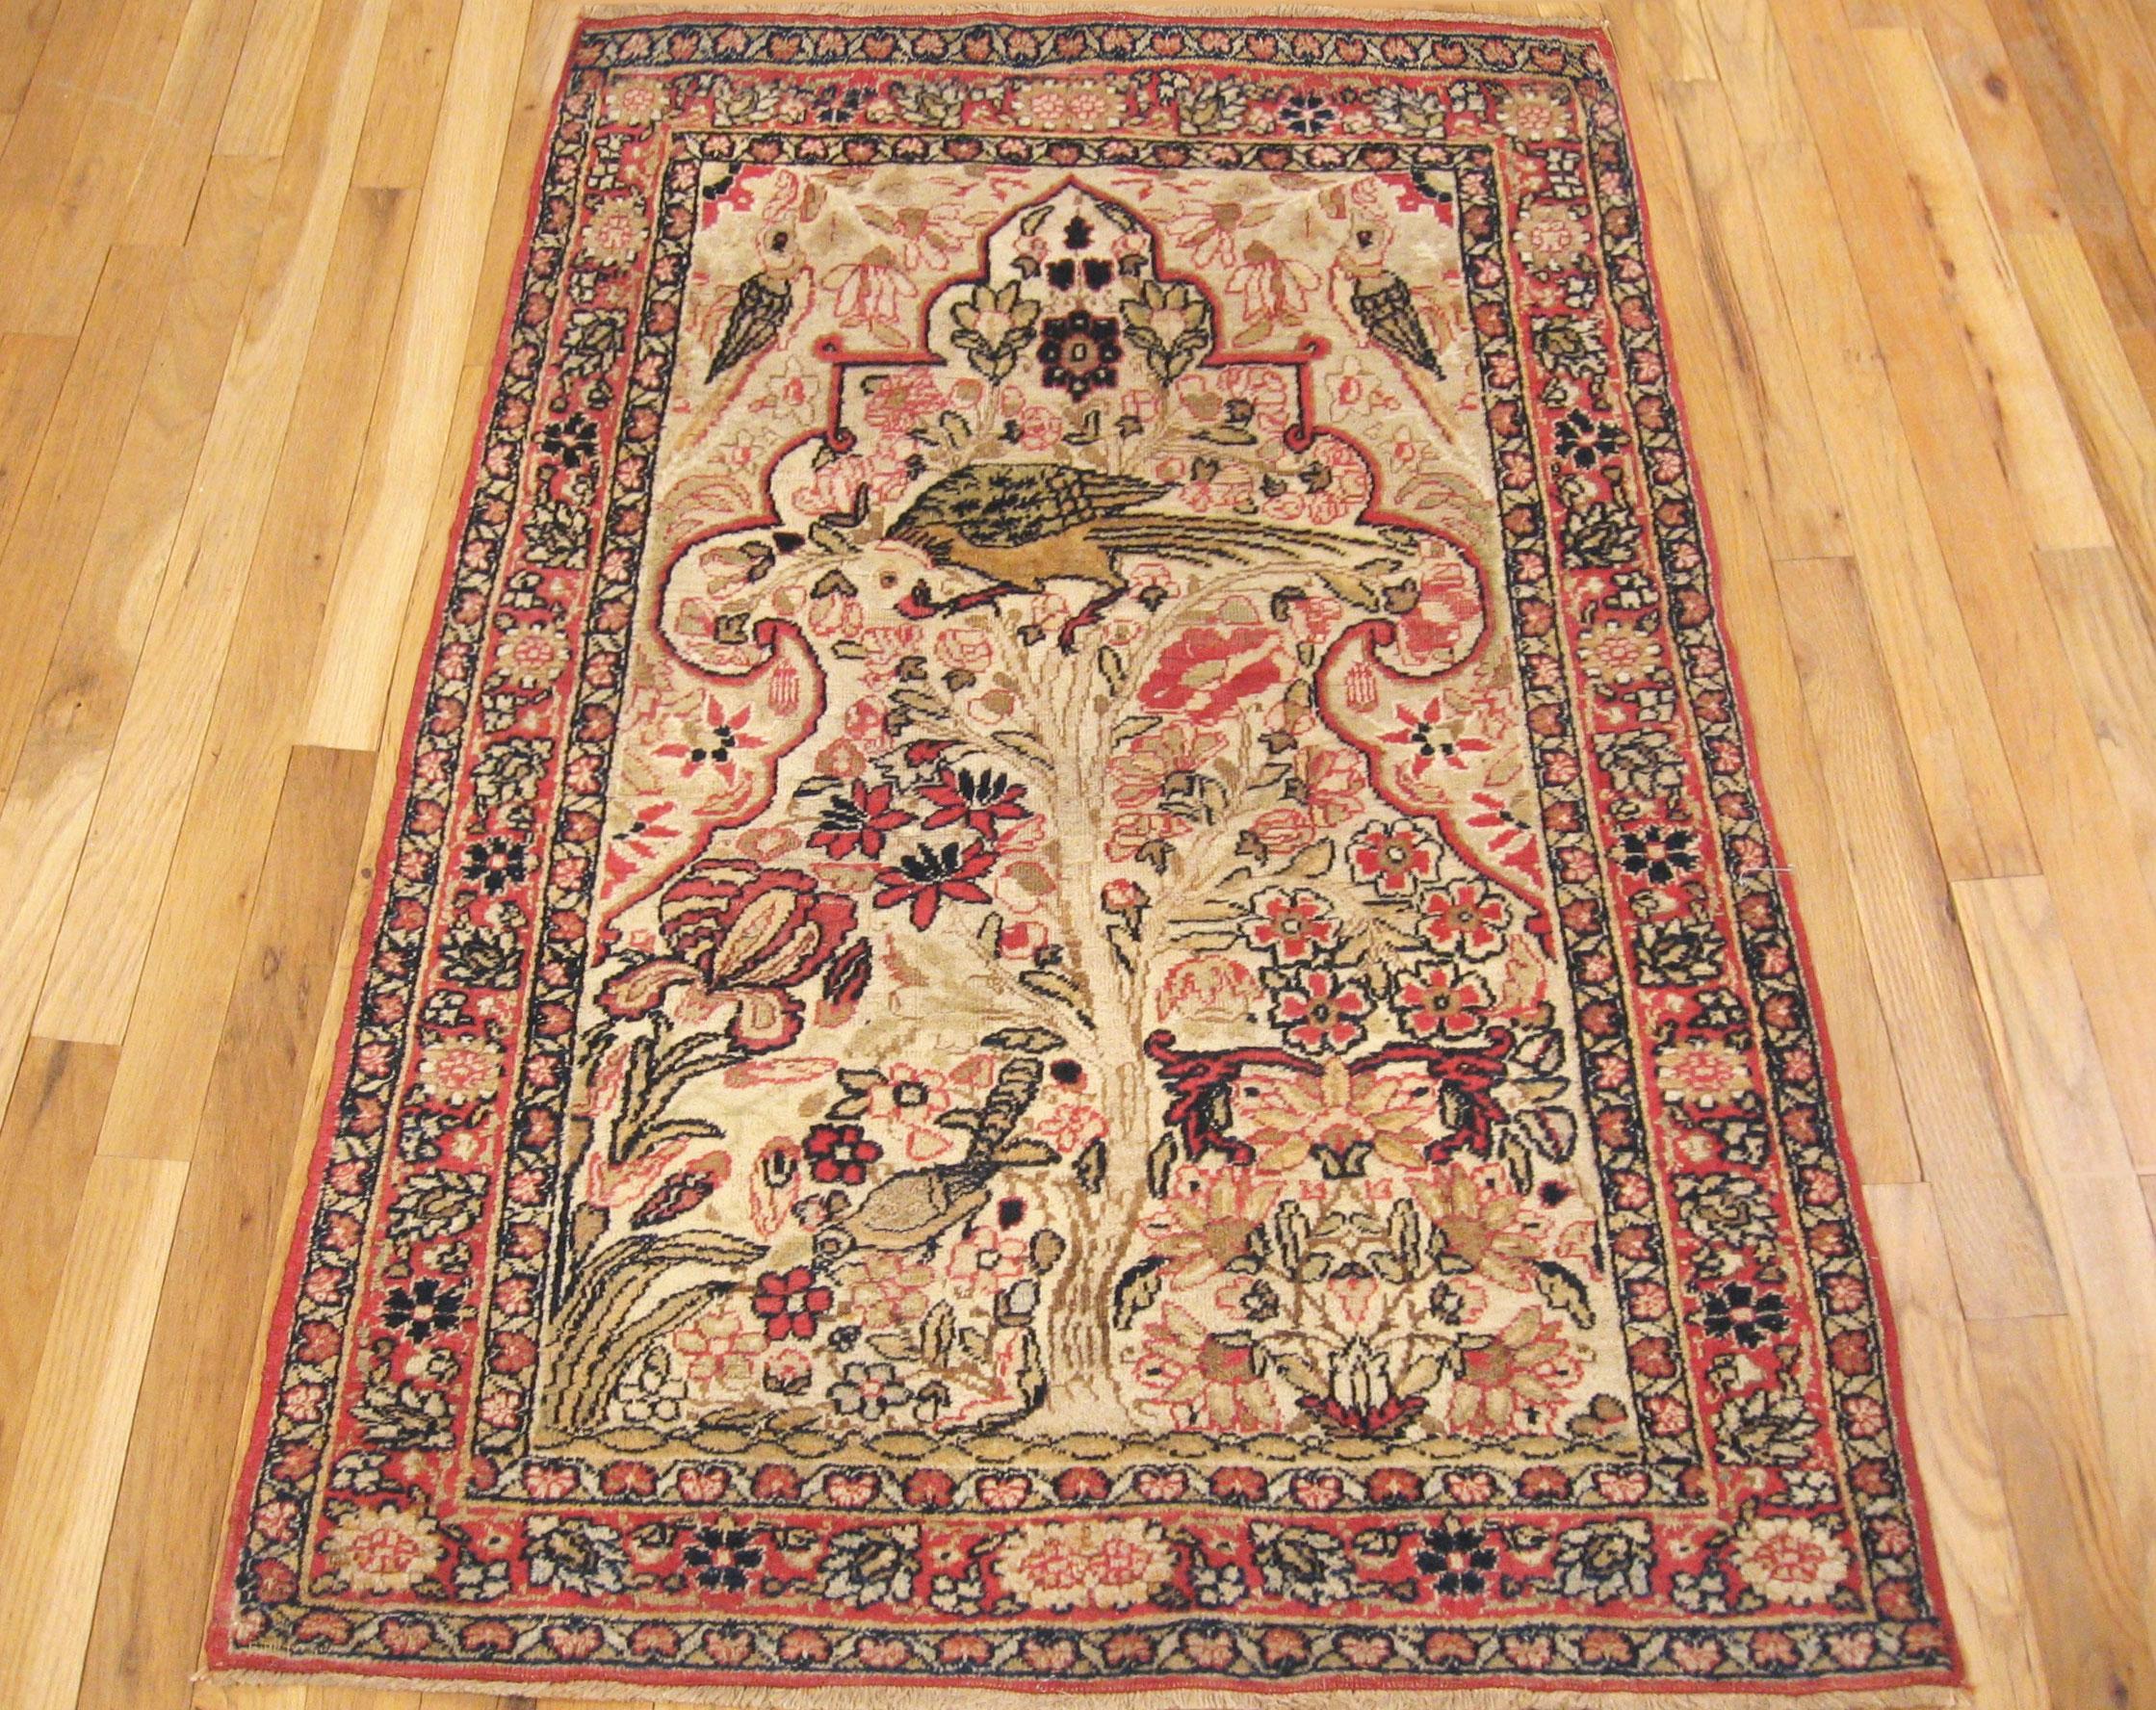 Antique Persian Lavar oriental carpet, small size, circa 1890

An antique Persian Lavar oriental carpet, size: 4'3